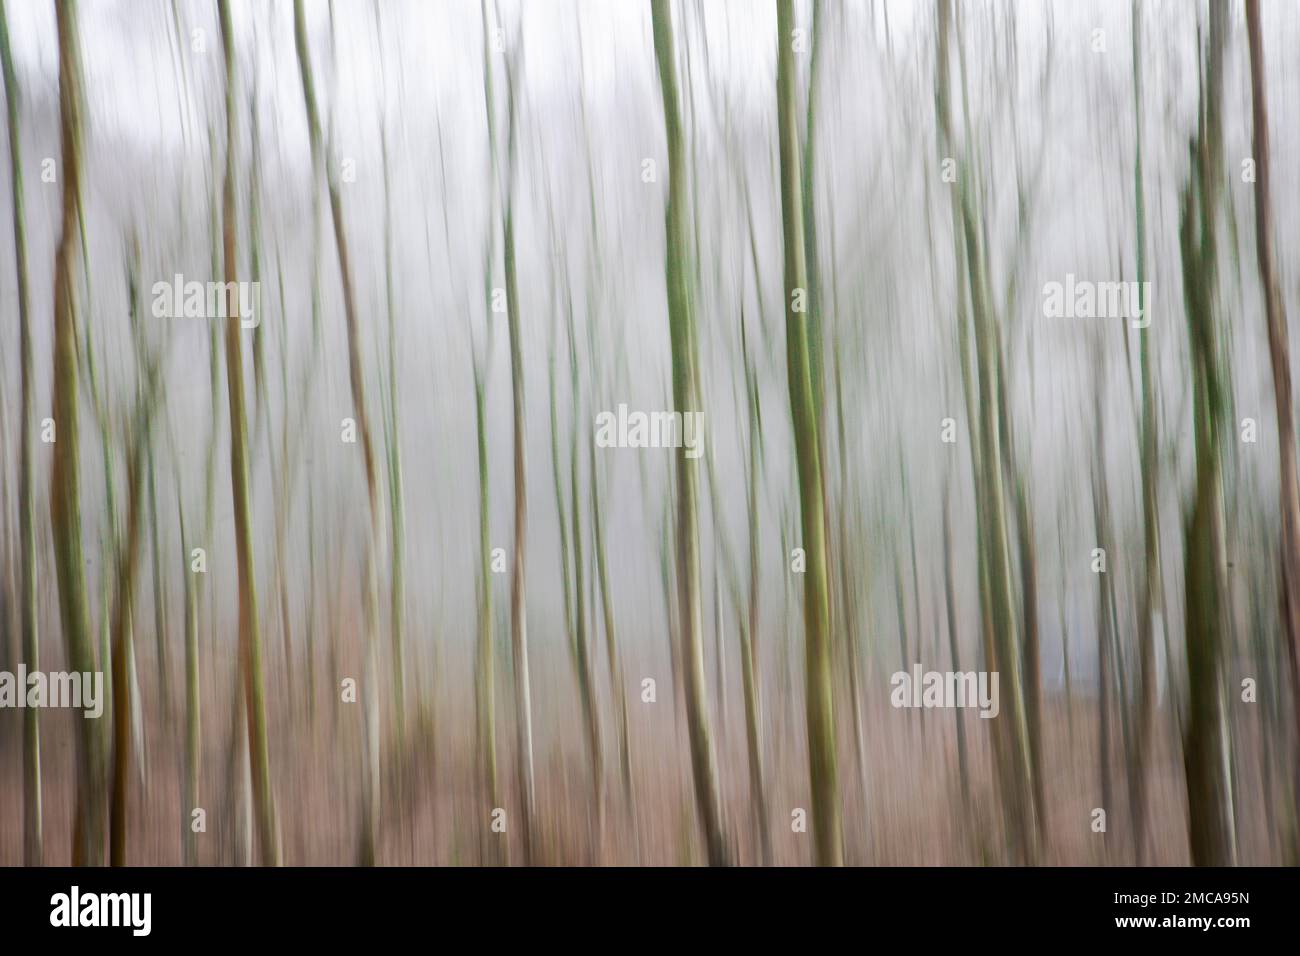 Silver Birches, künstlerische Interpretation durch absichtliche Kamerabewegung Stockfoto